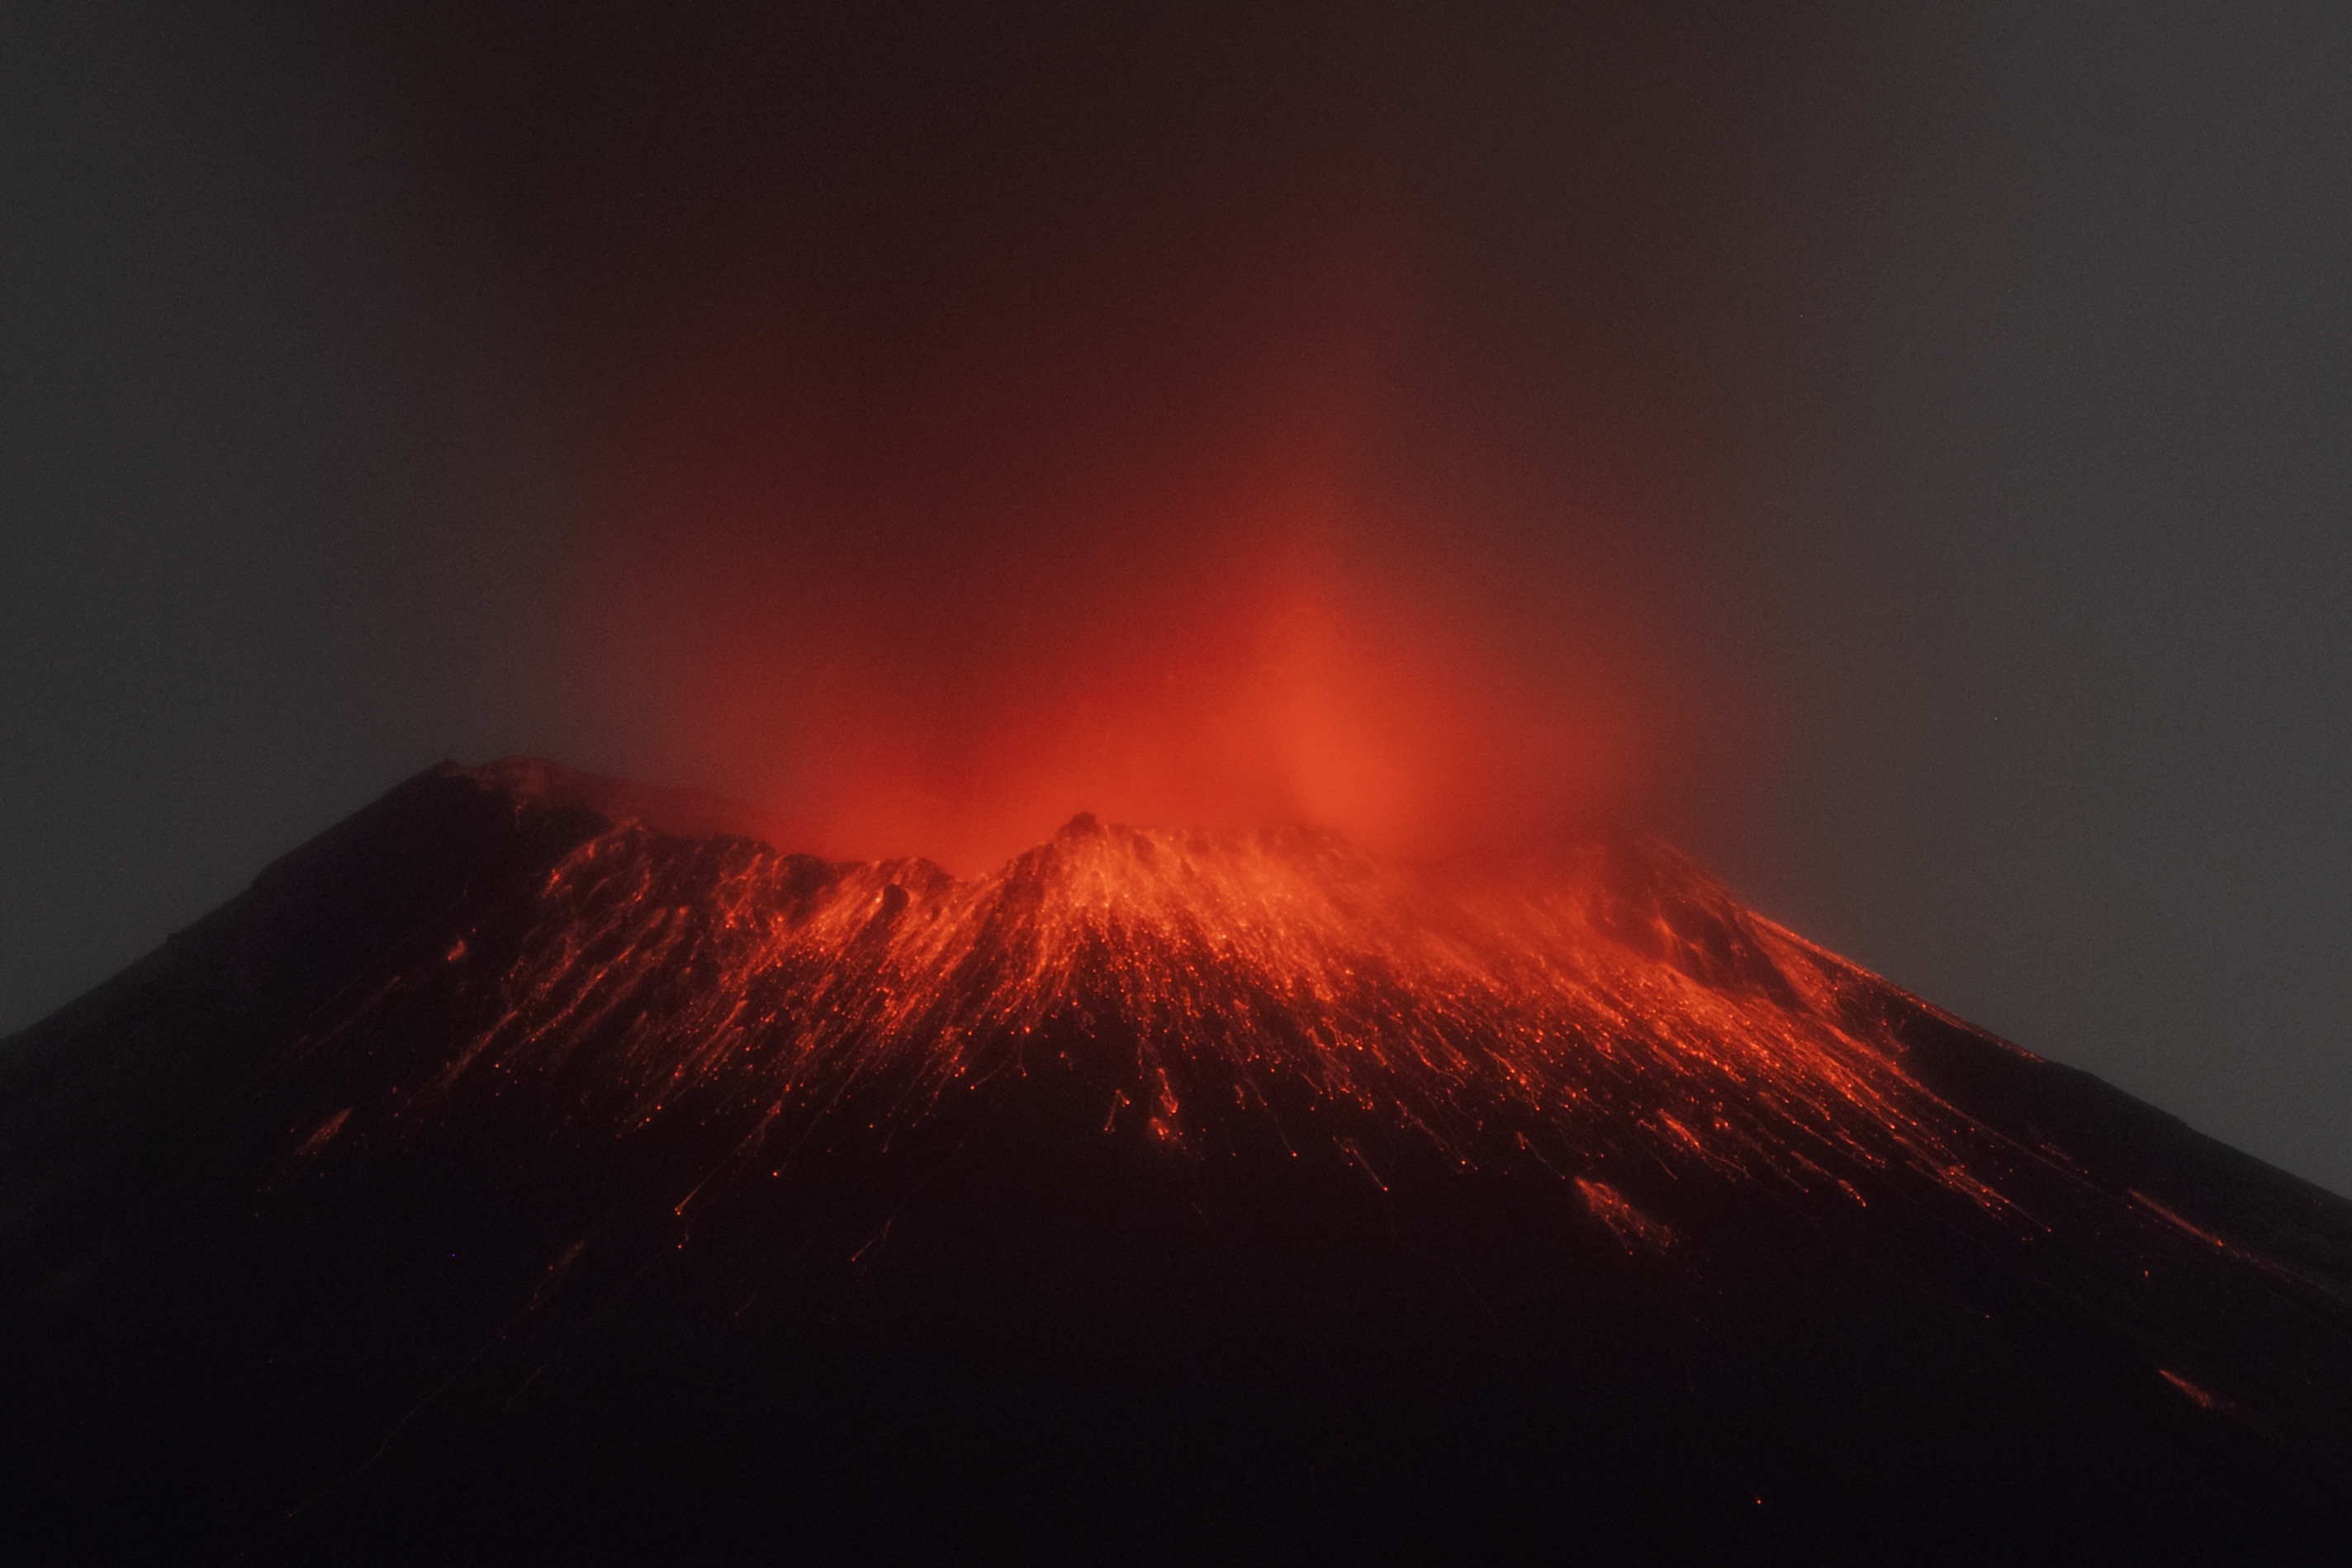 Volcán Popocatépetl hoy 23 de mayo: continúa la expulsión de fragmentos incandescentes